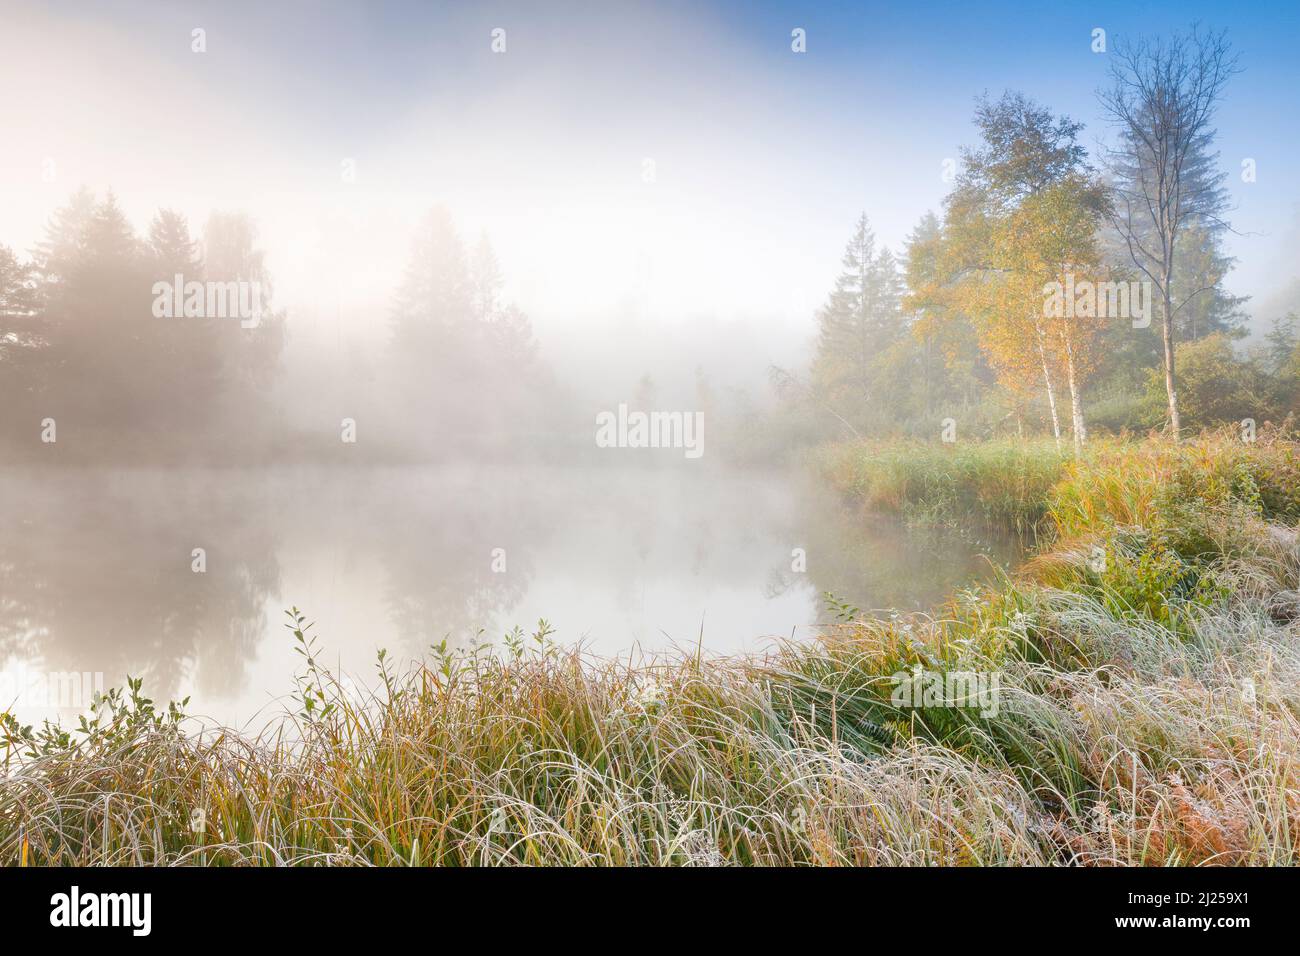 Ambiance matinale automnale à l'étang dans la réserve naturelle Wildert à Illna. Le givre recouvre la végétation au premier plan et les wafts de brume survolant l'eau, canton de Zurich, Suisse Banque D'Images